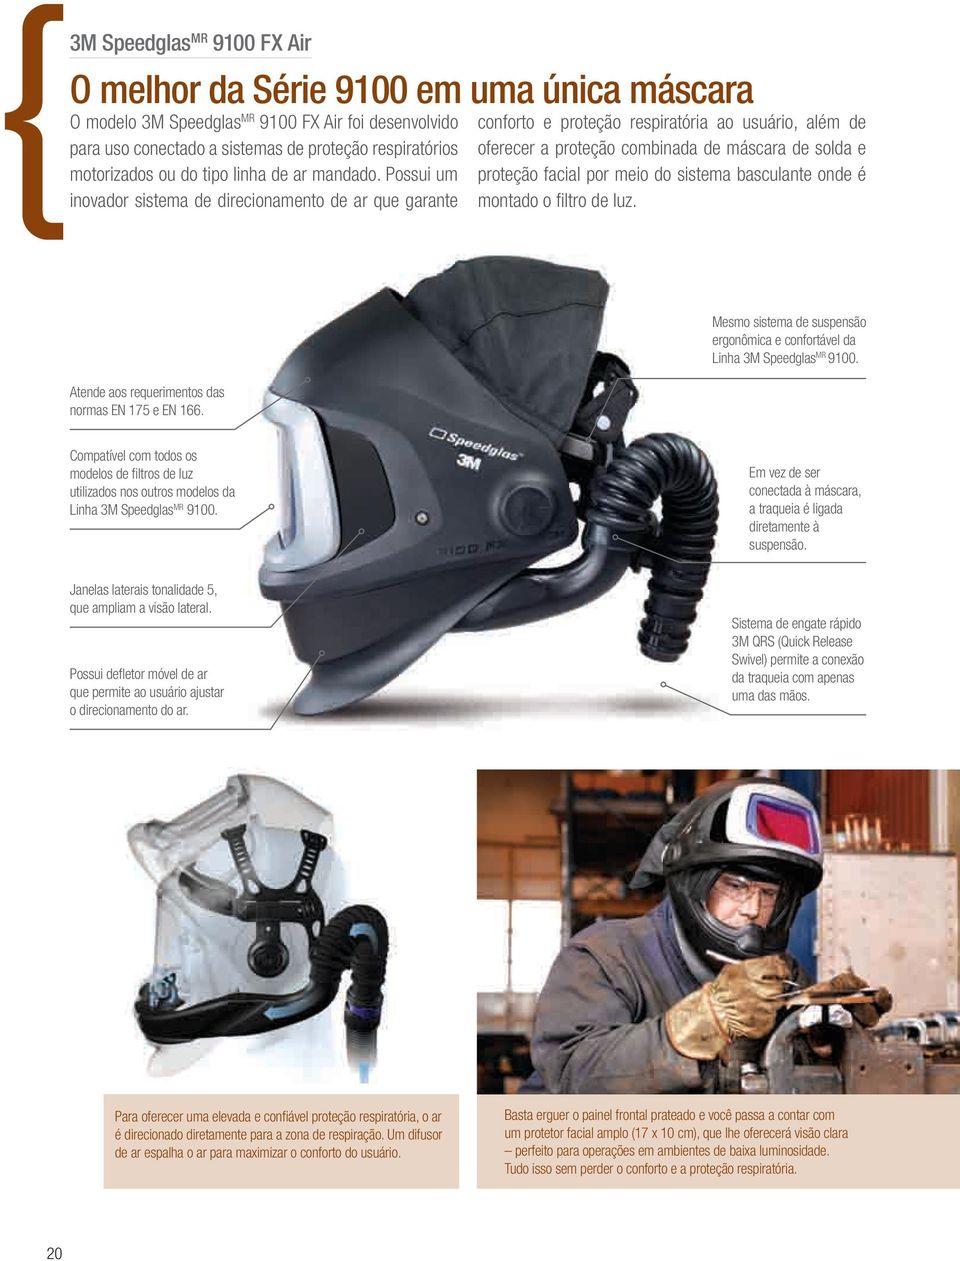 Possui um inovador sistema de direcionamento de ar que garante conforto e proteção respiratória ao usuário, além de oferecer a proteção combinada de máscara de solda e proteção facial por meio do